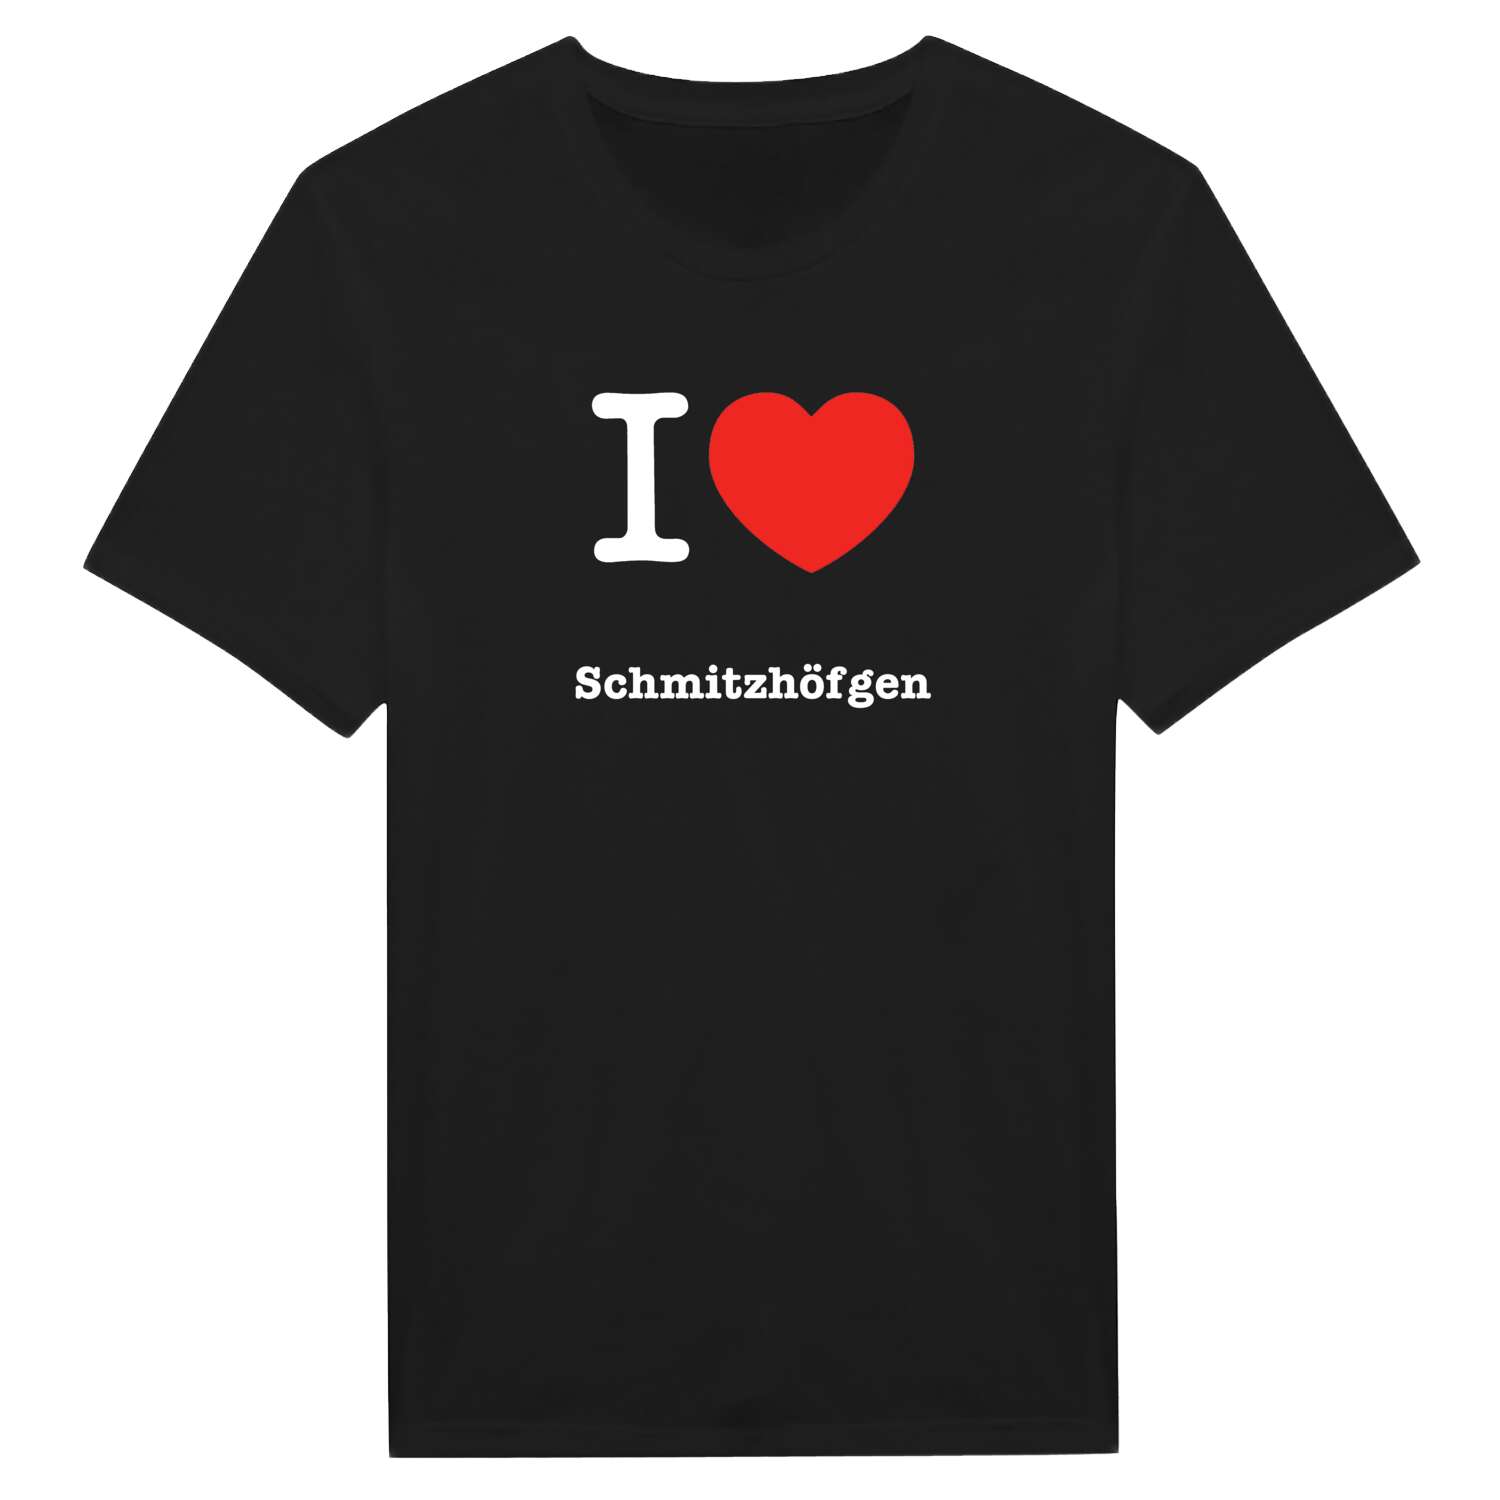 Schmitzhöfgen T-Shirt »I love«